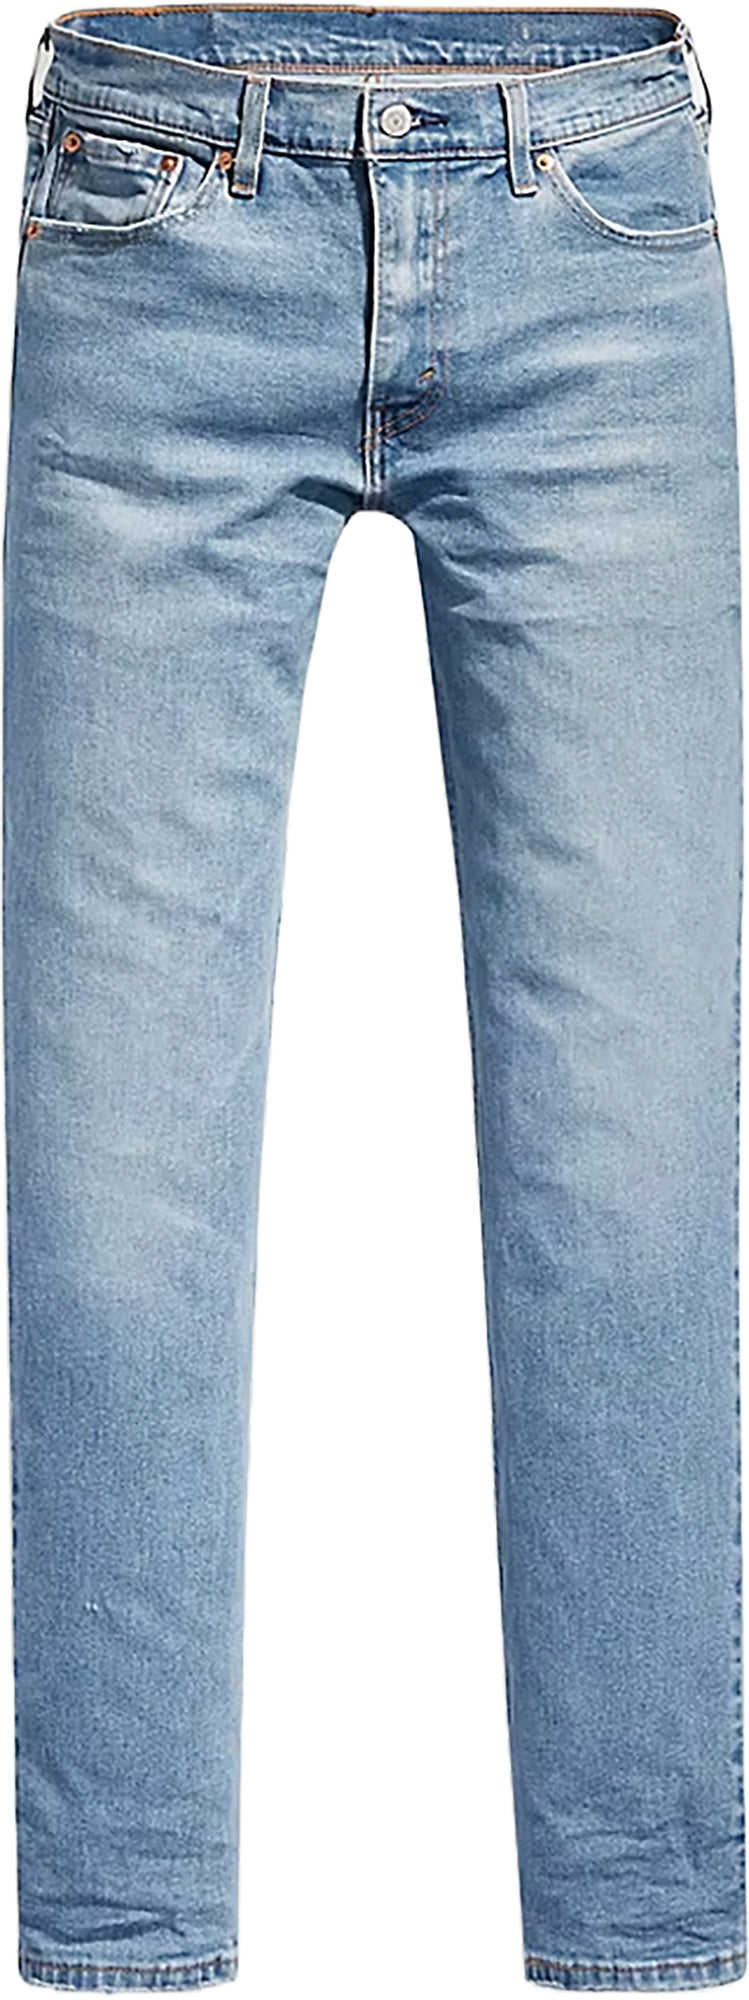 Levis 511™ Slim Fit Men's Jeans Brown